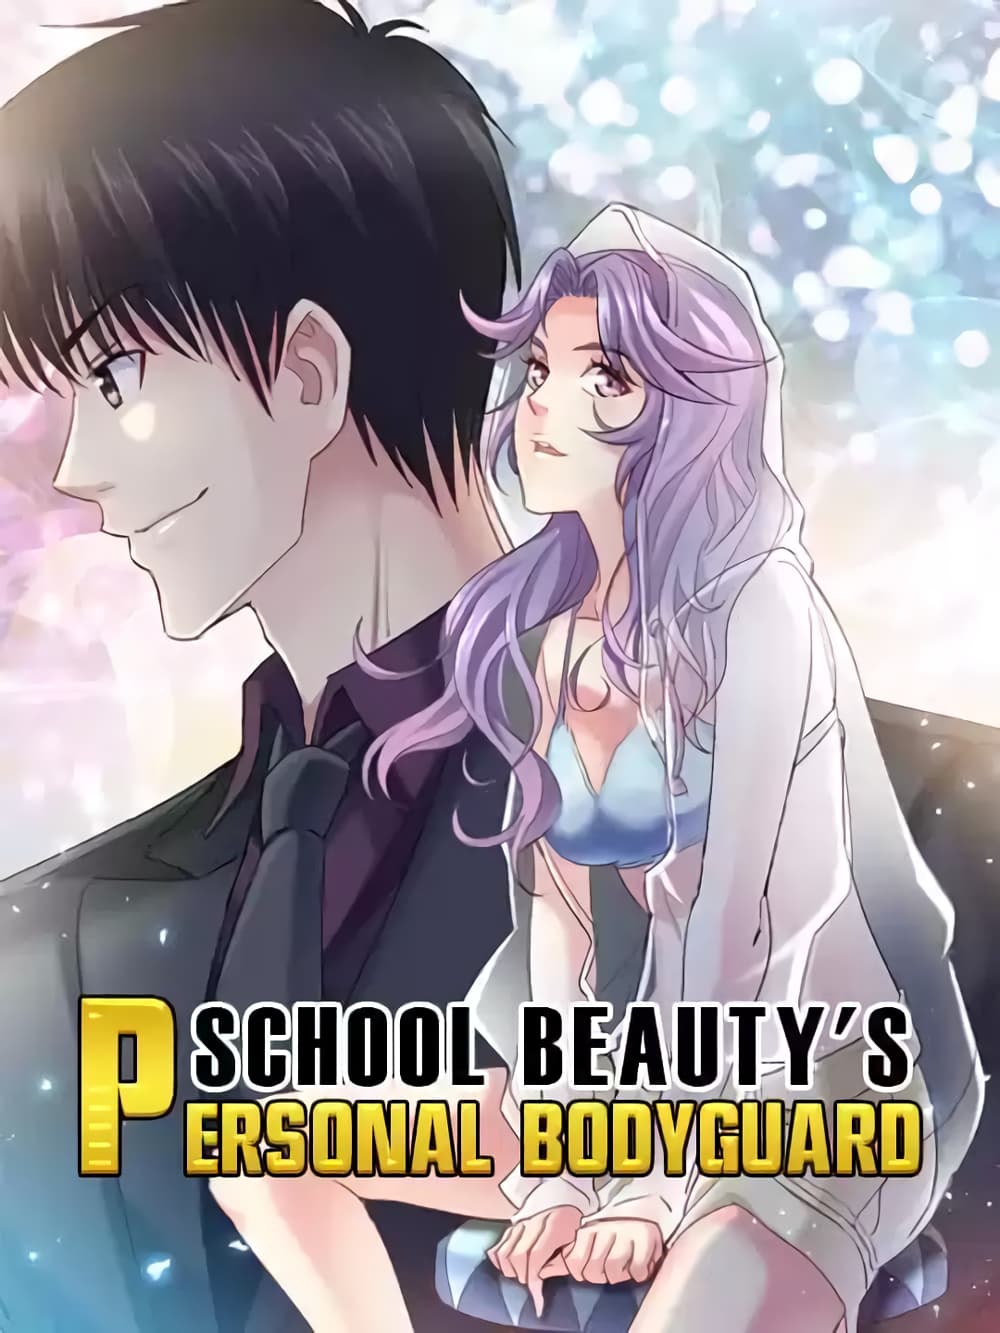 School Beauty’s Bodyguard 281 (1)